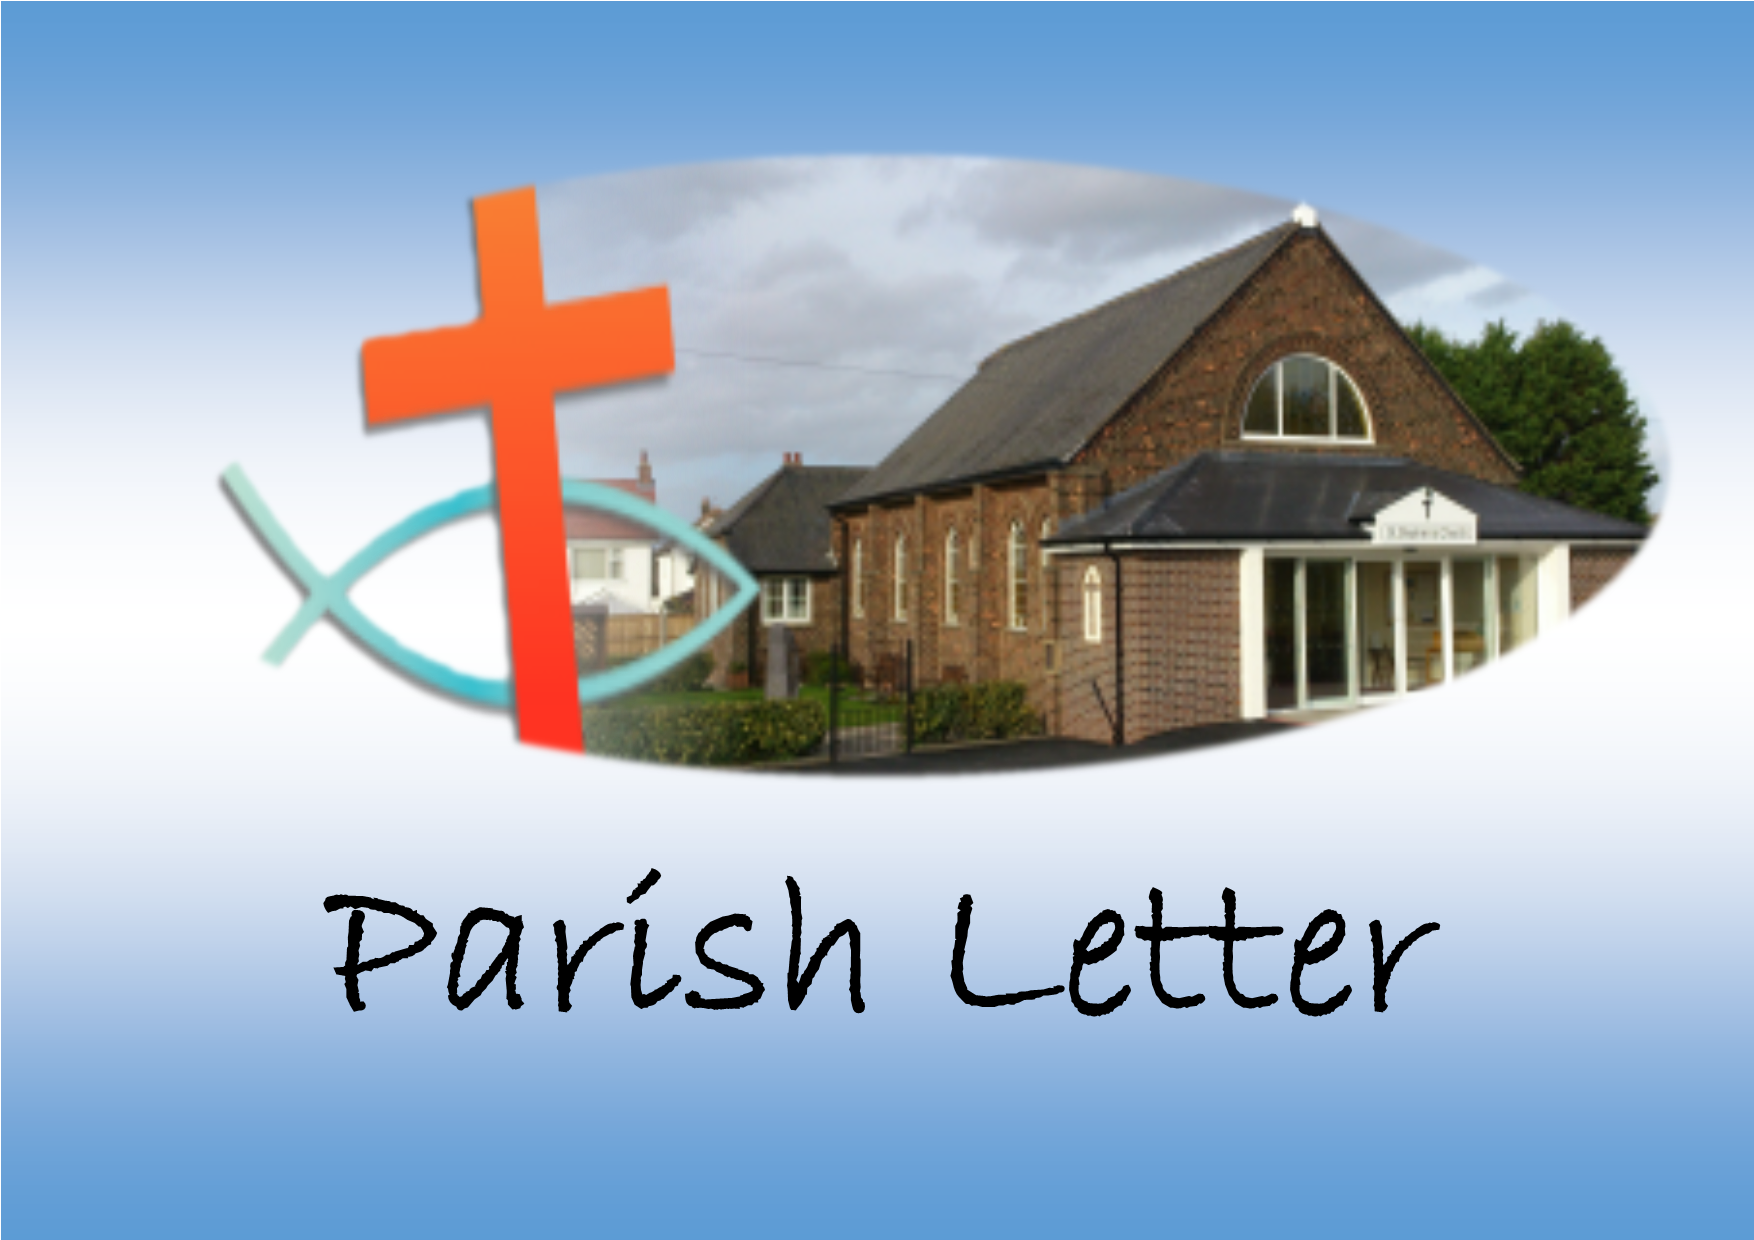 Parish Letter